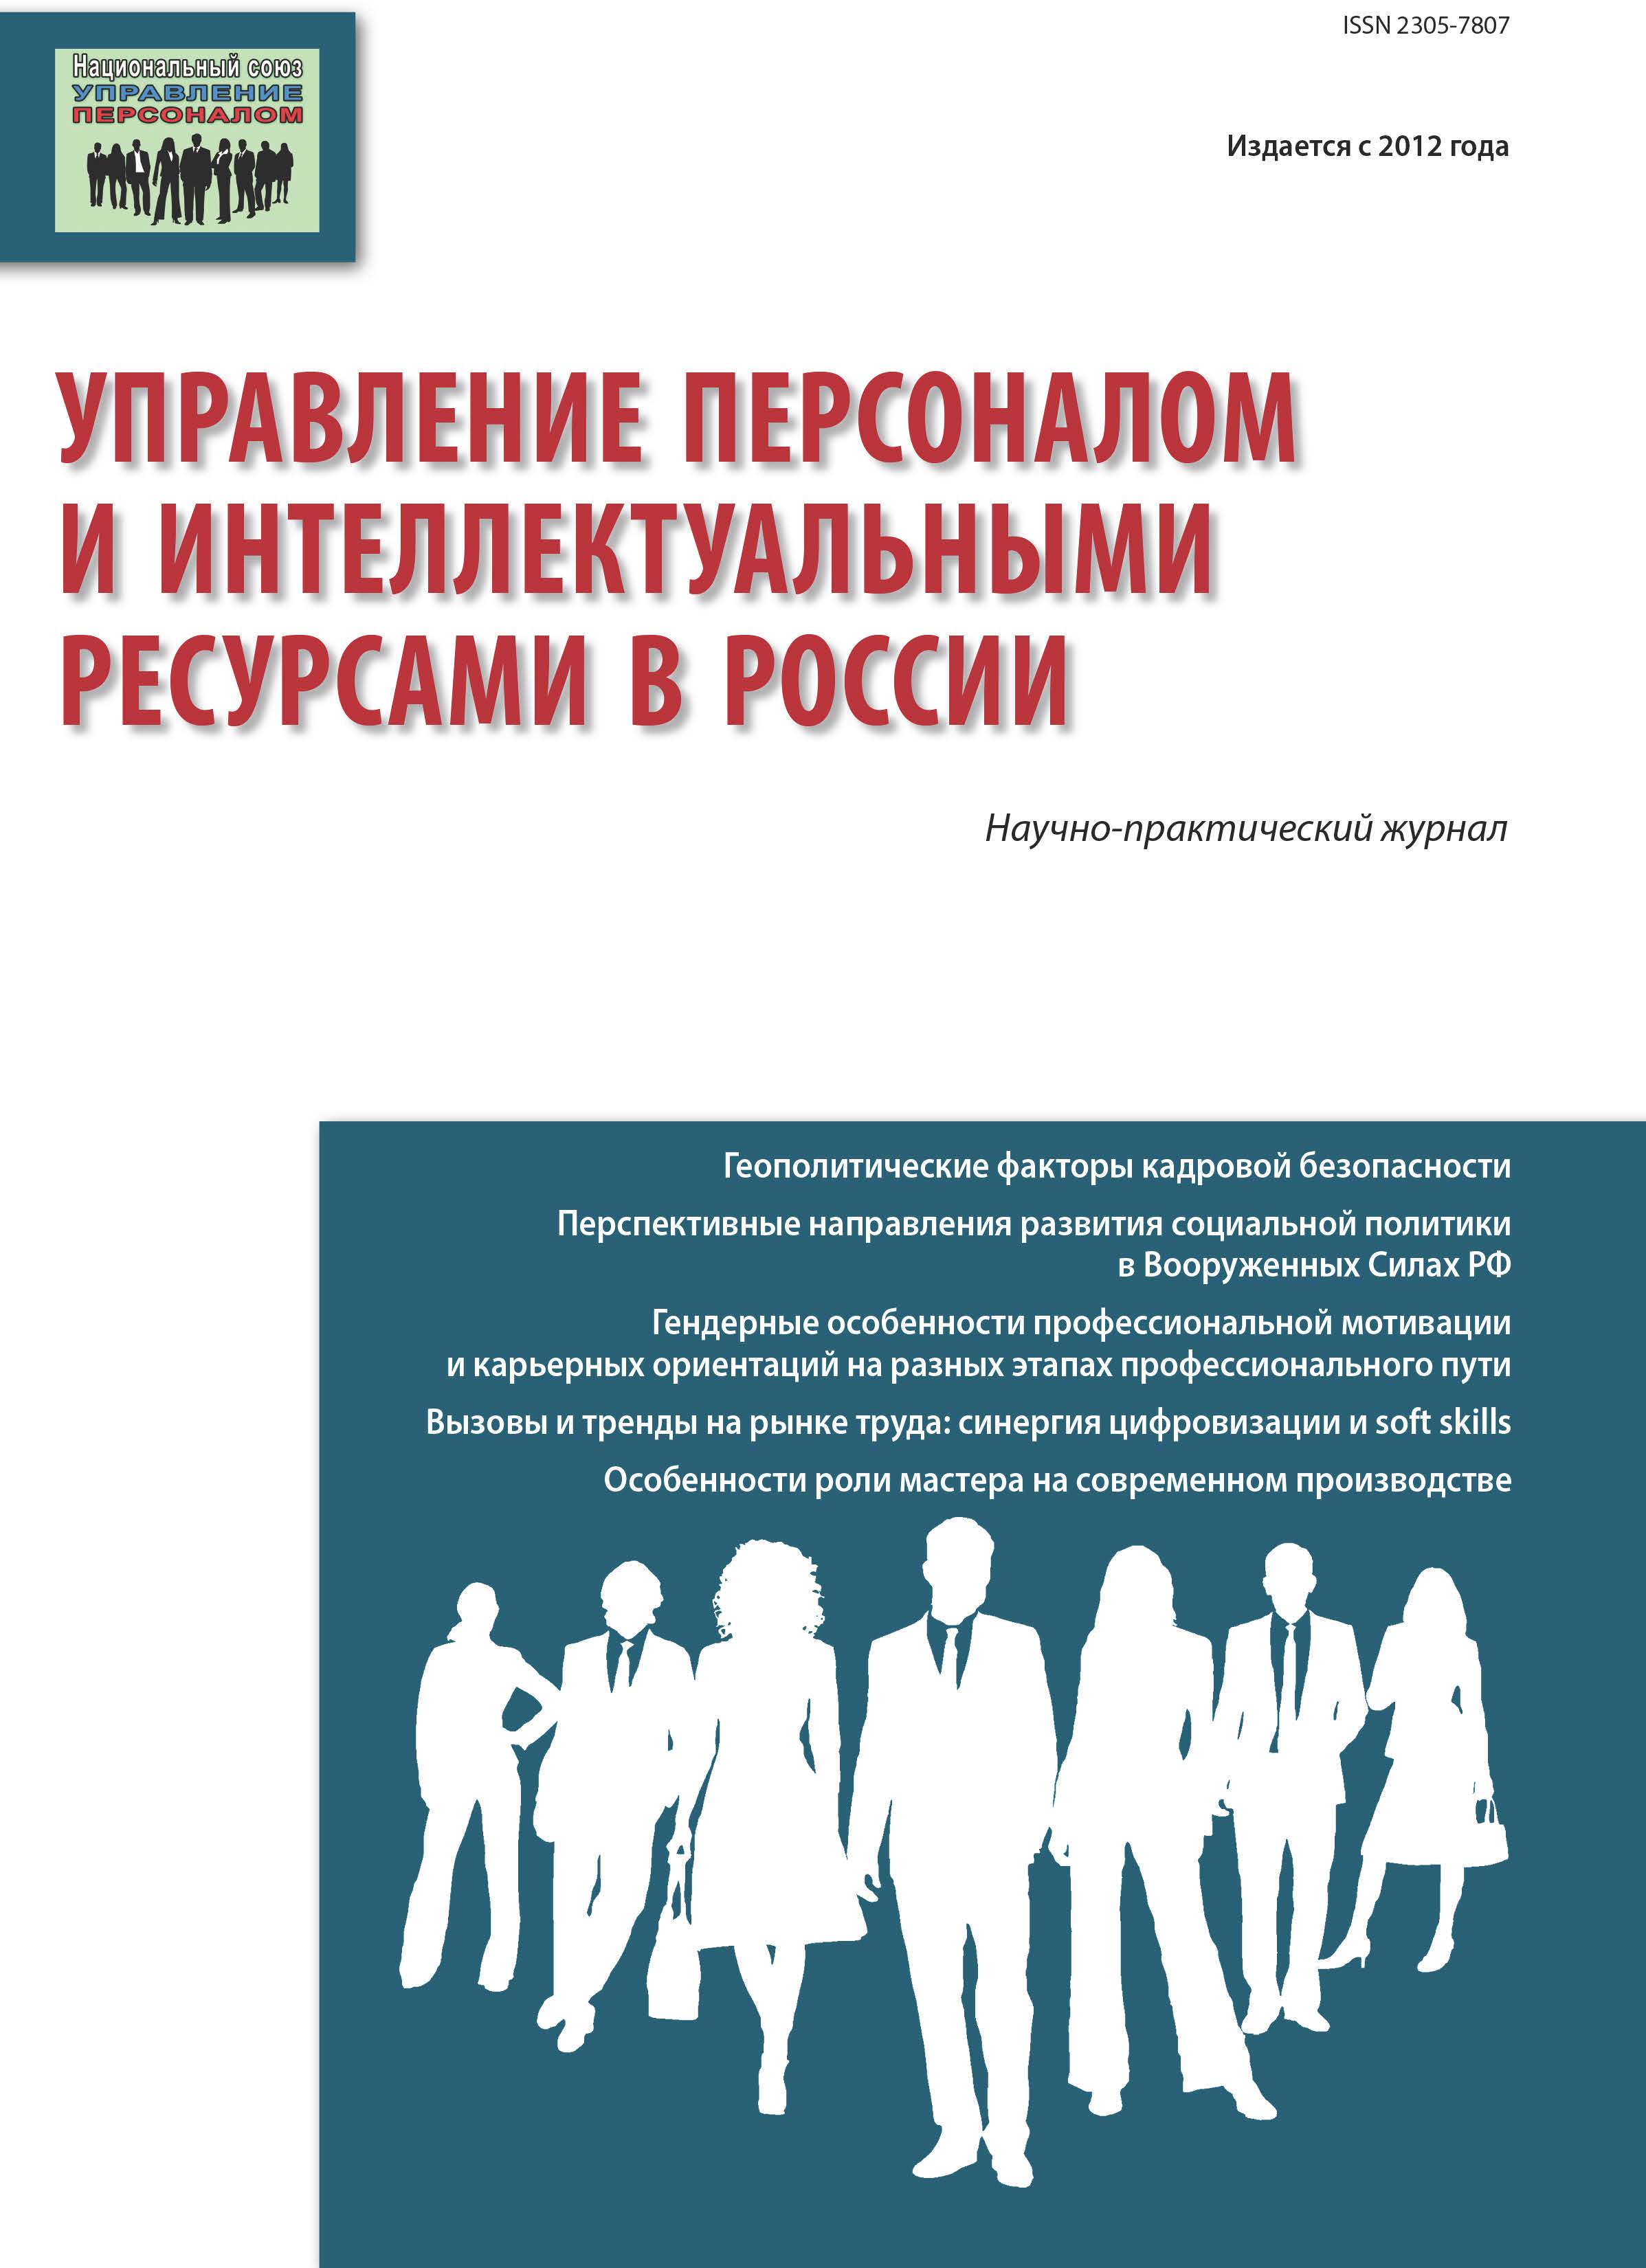             Управление персоналом и интеллектуальными ресурсами в России
    